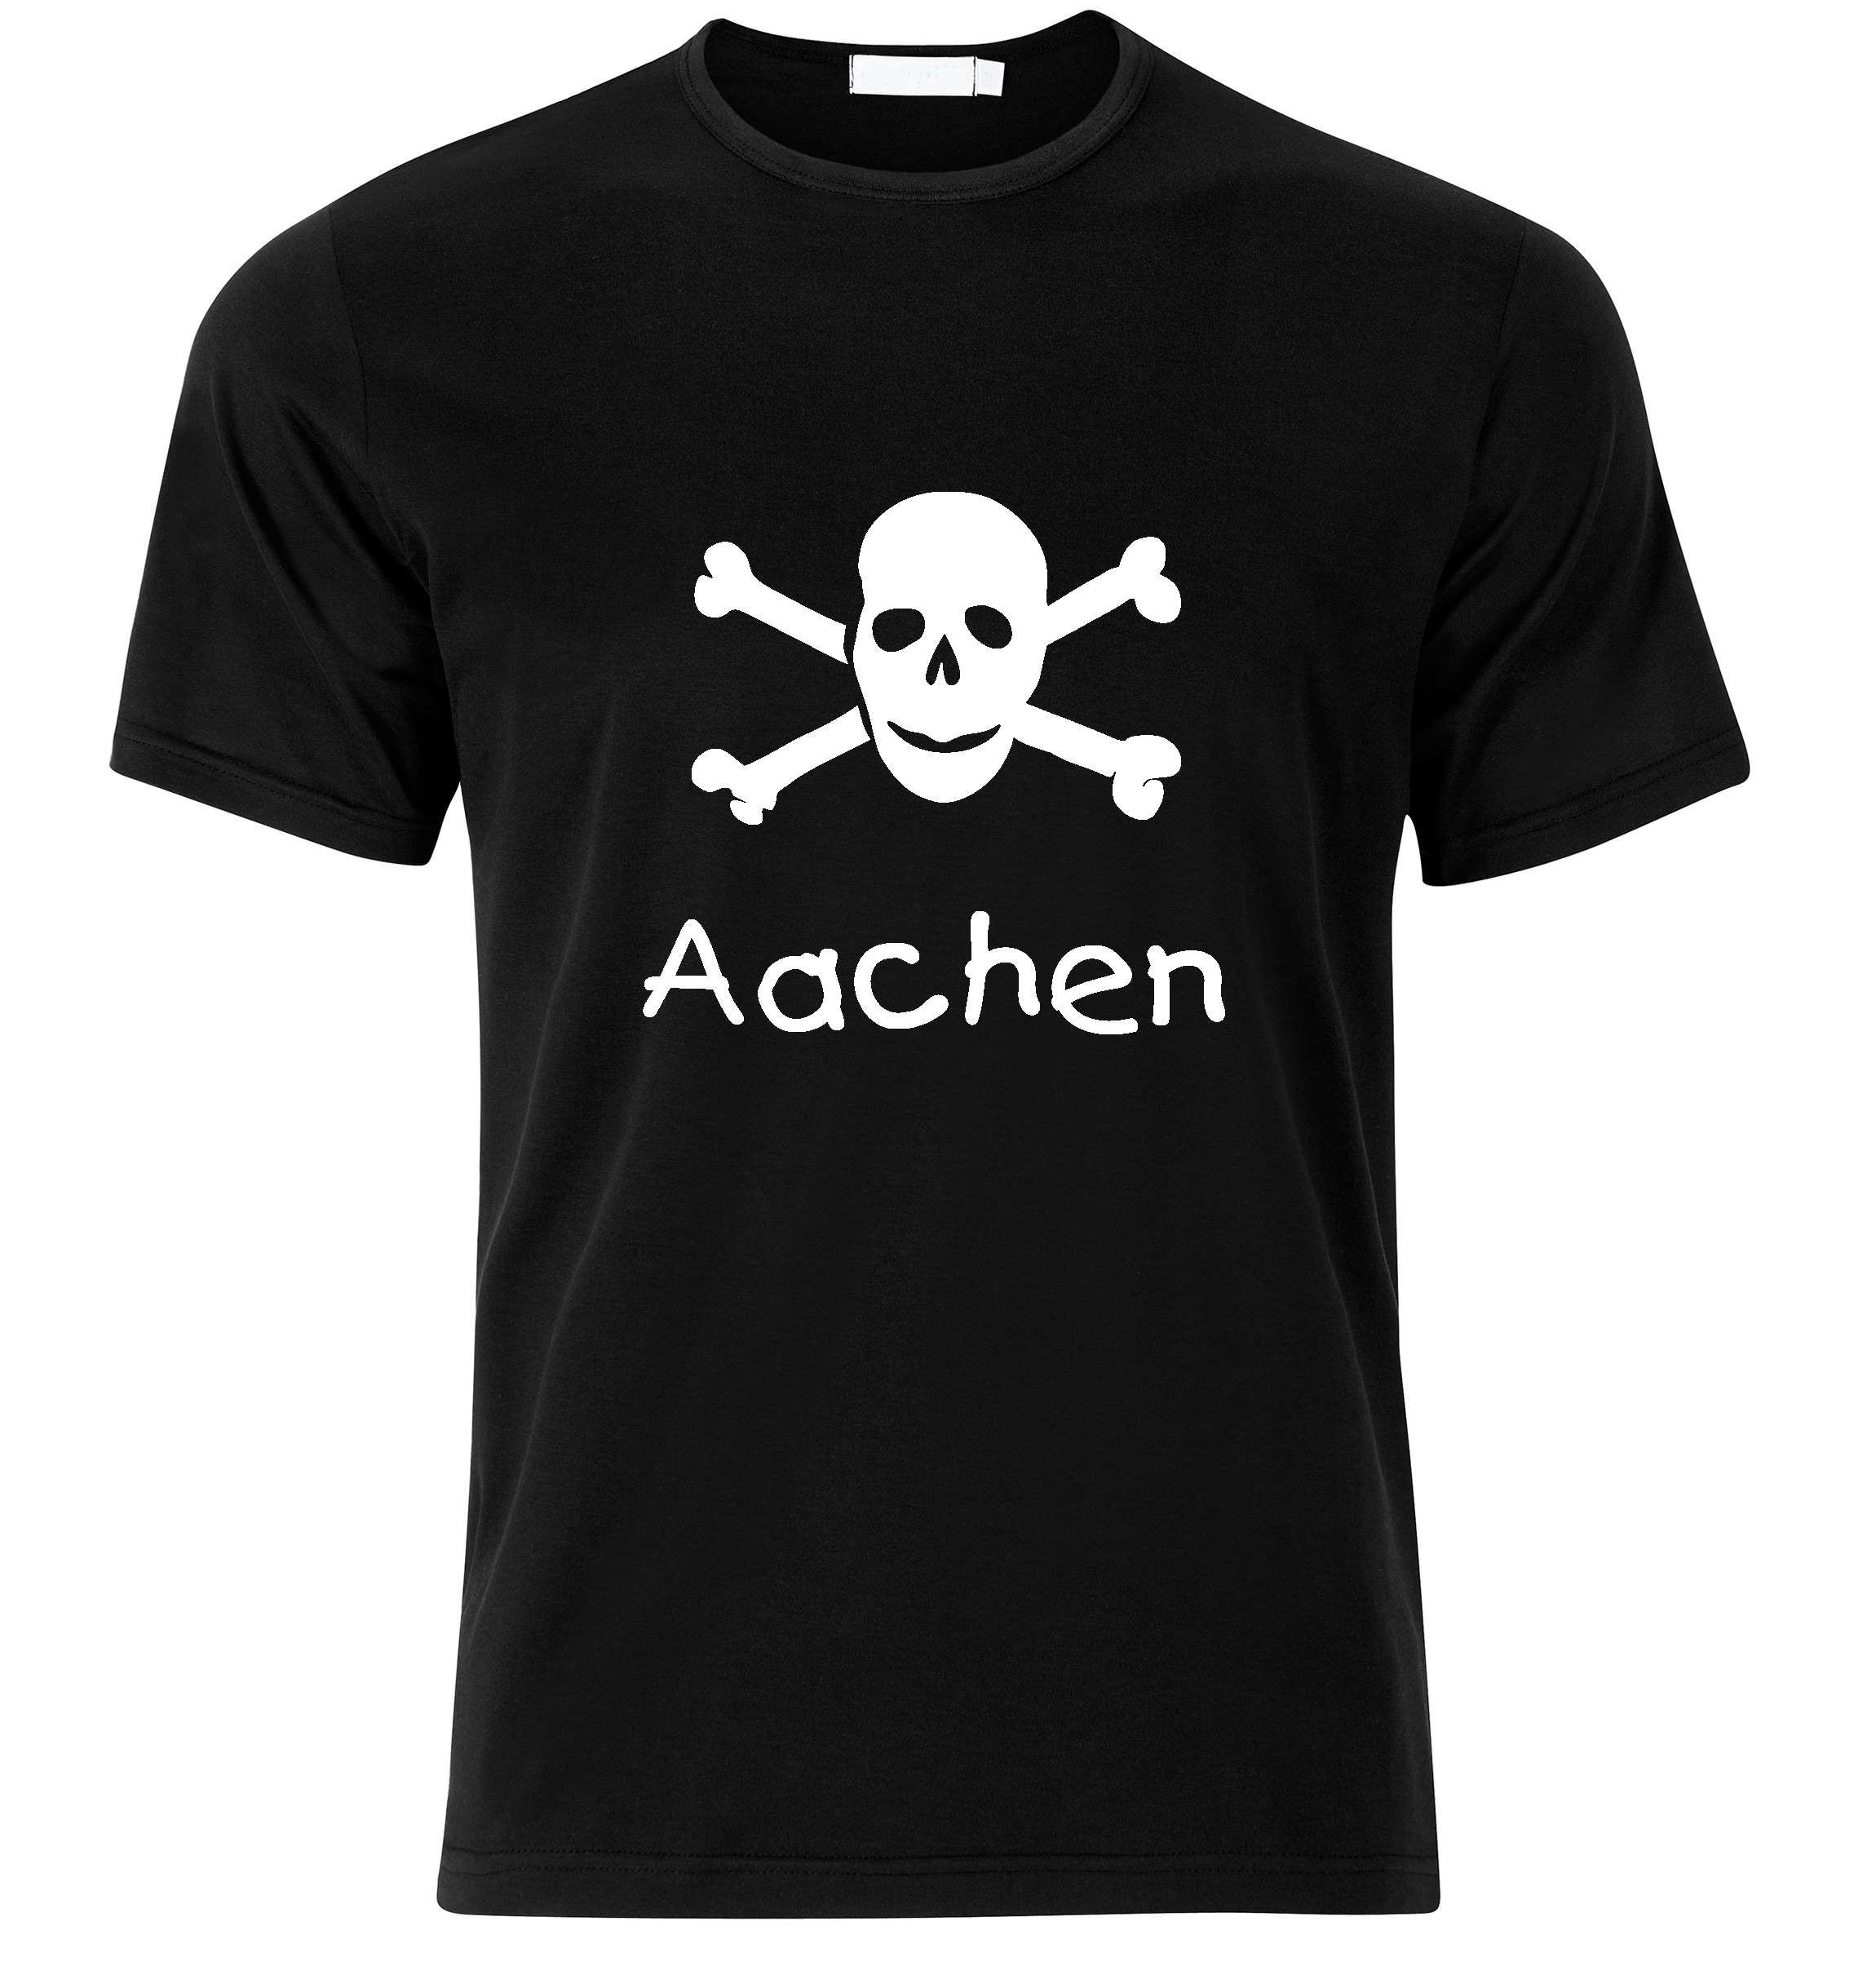 T-Shirt Aachen Jolly Roger, Totenkopf